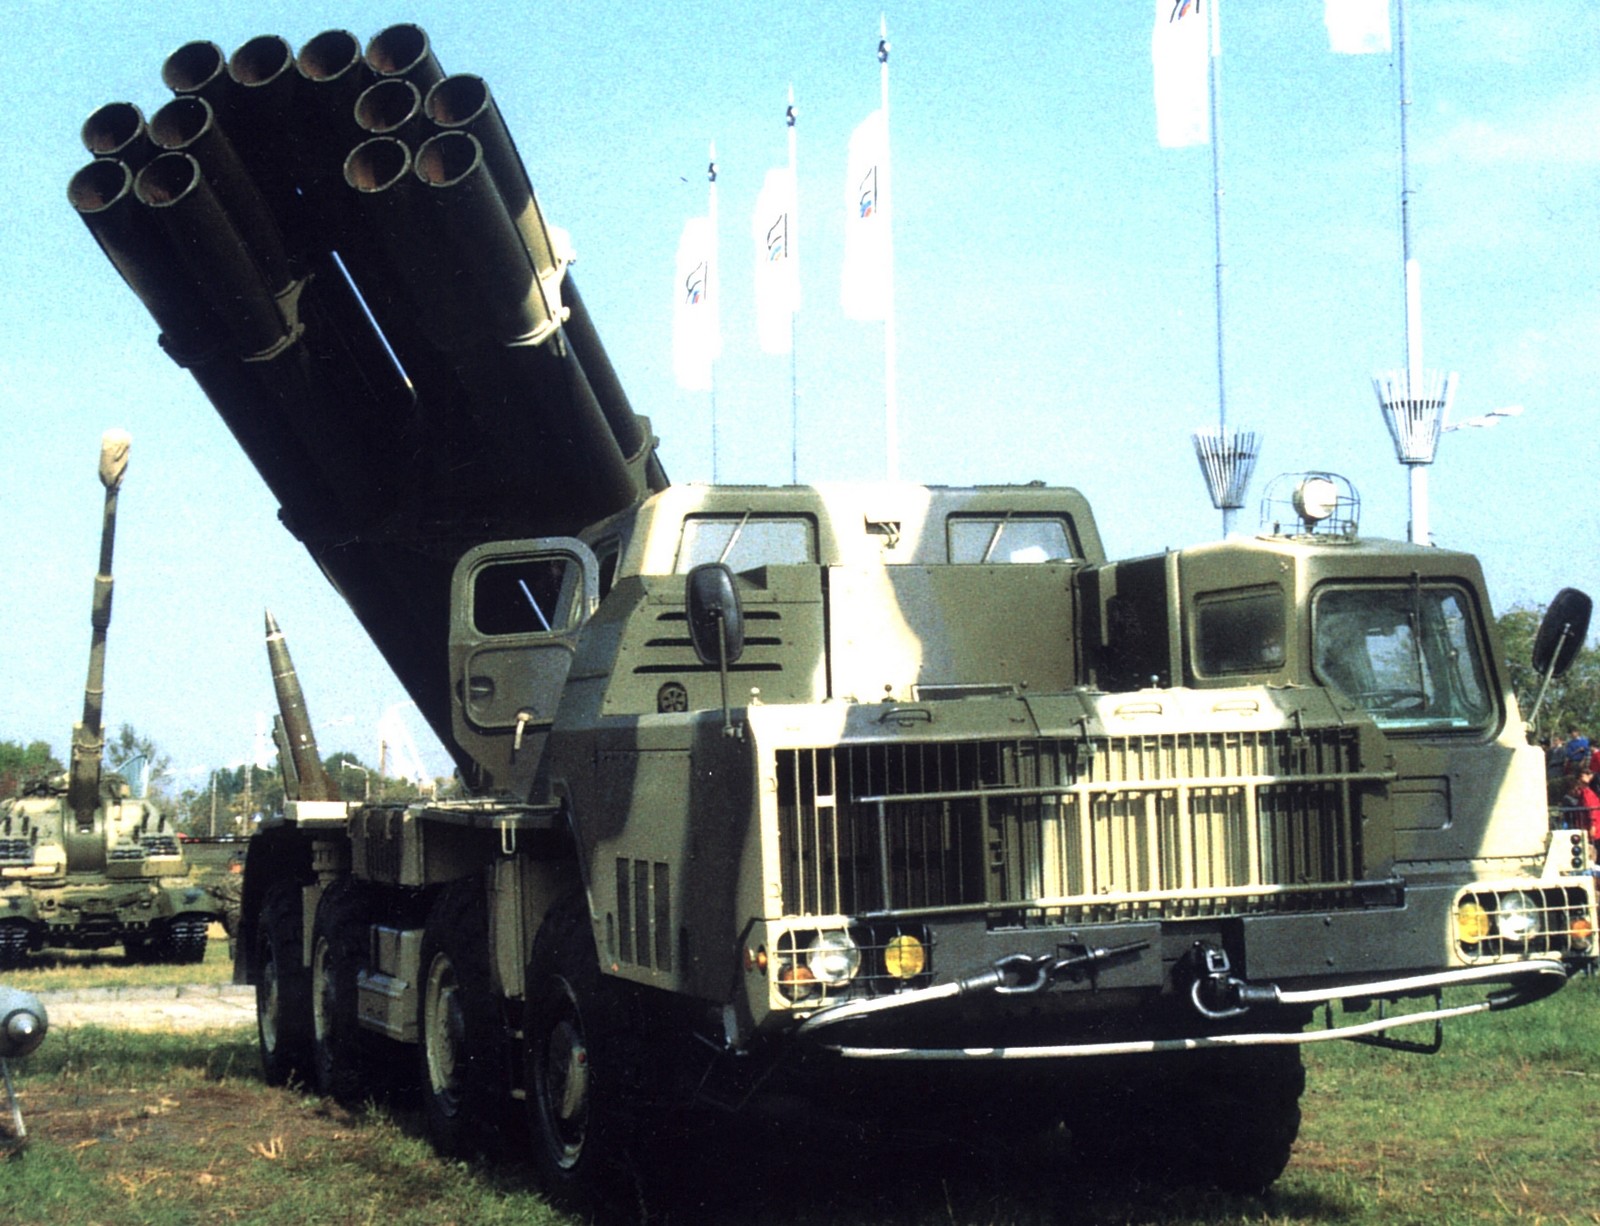 Пусковая установка 9А52 комплекса «Смерч» на шасси МАЗ-543М (из проспекта «Росвооружение»)